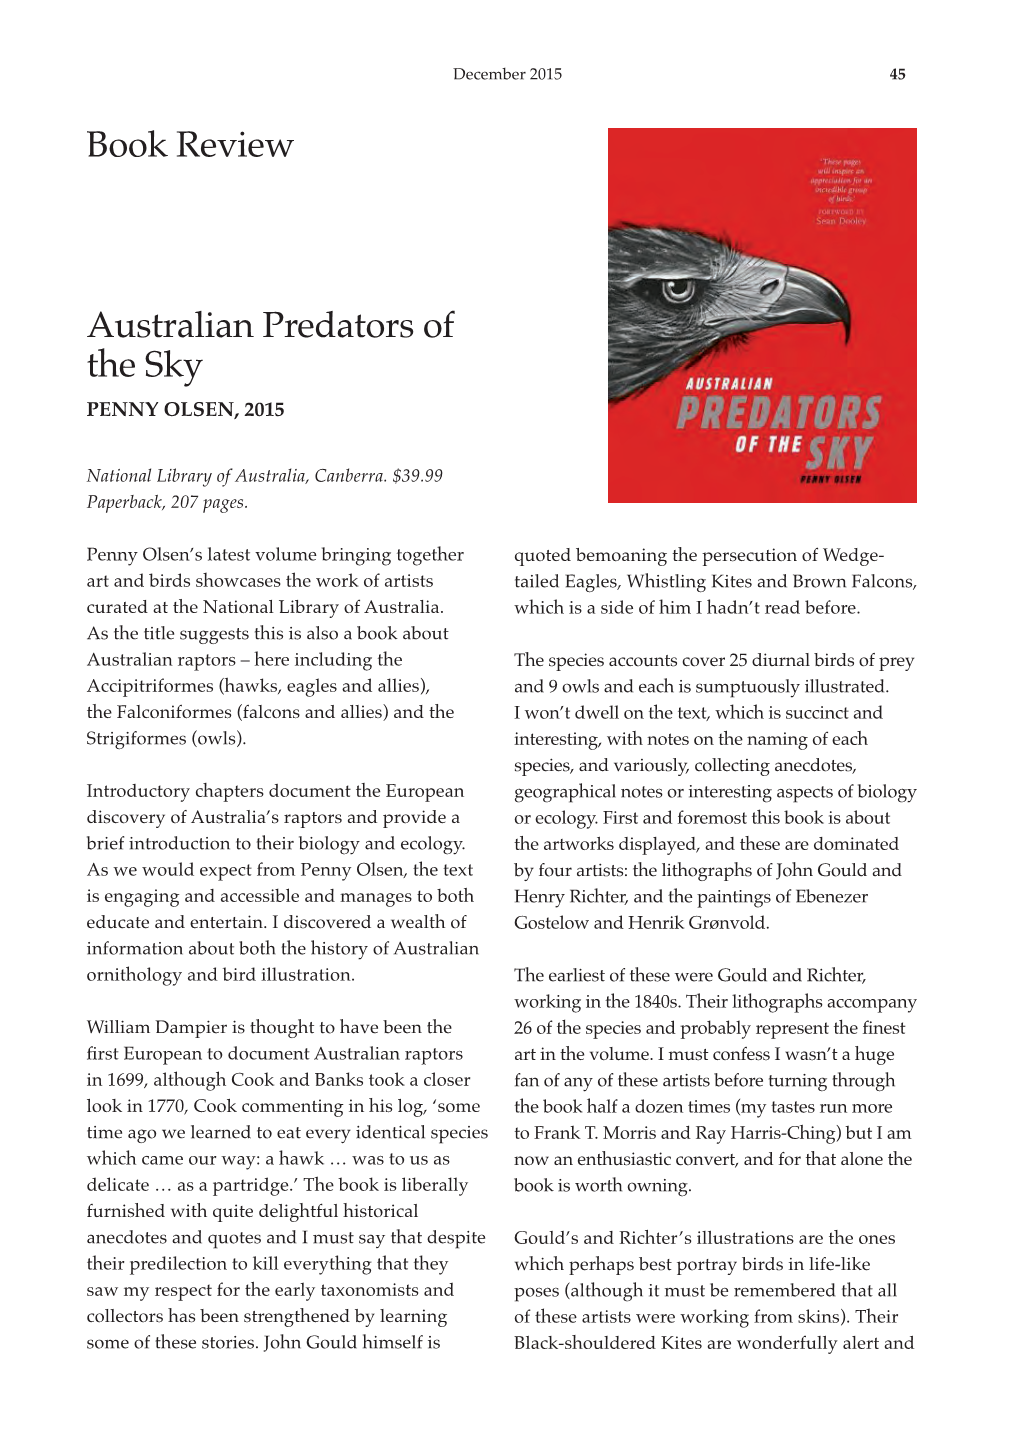 Book Review Australian Predators of The